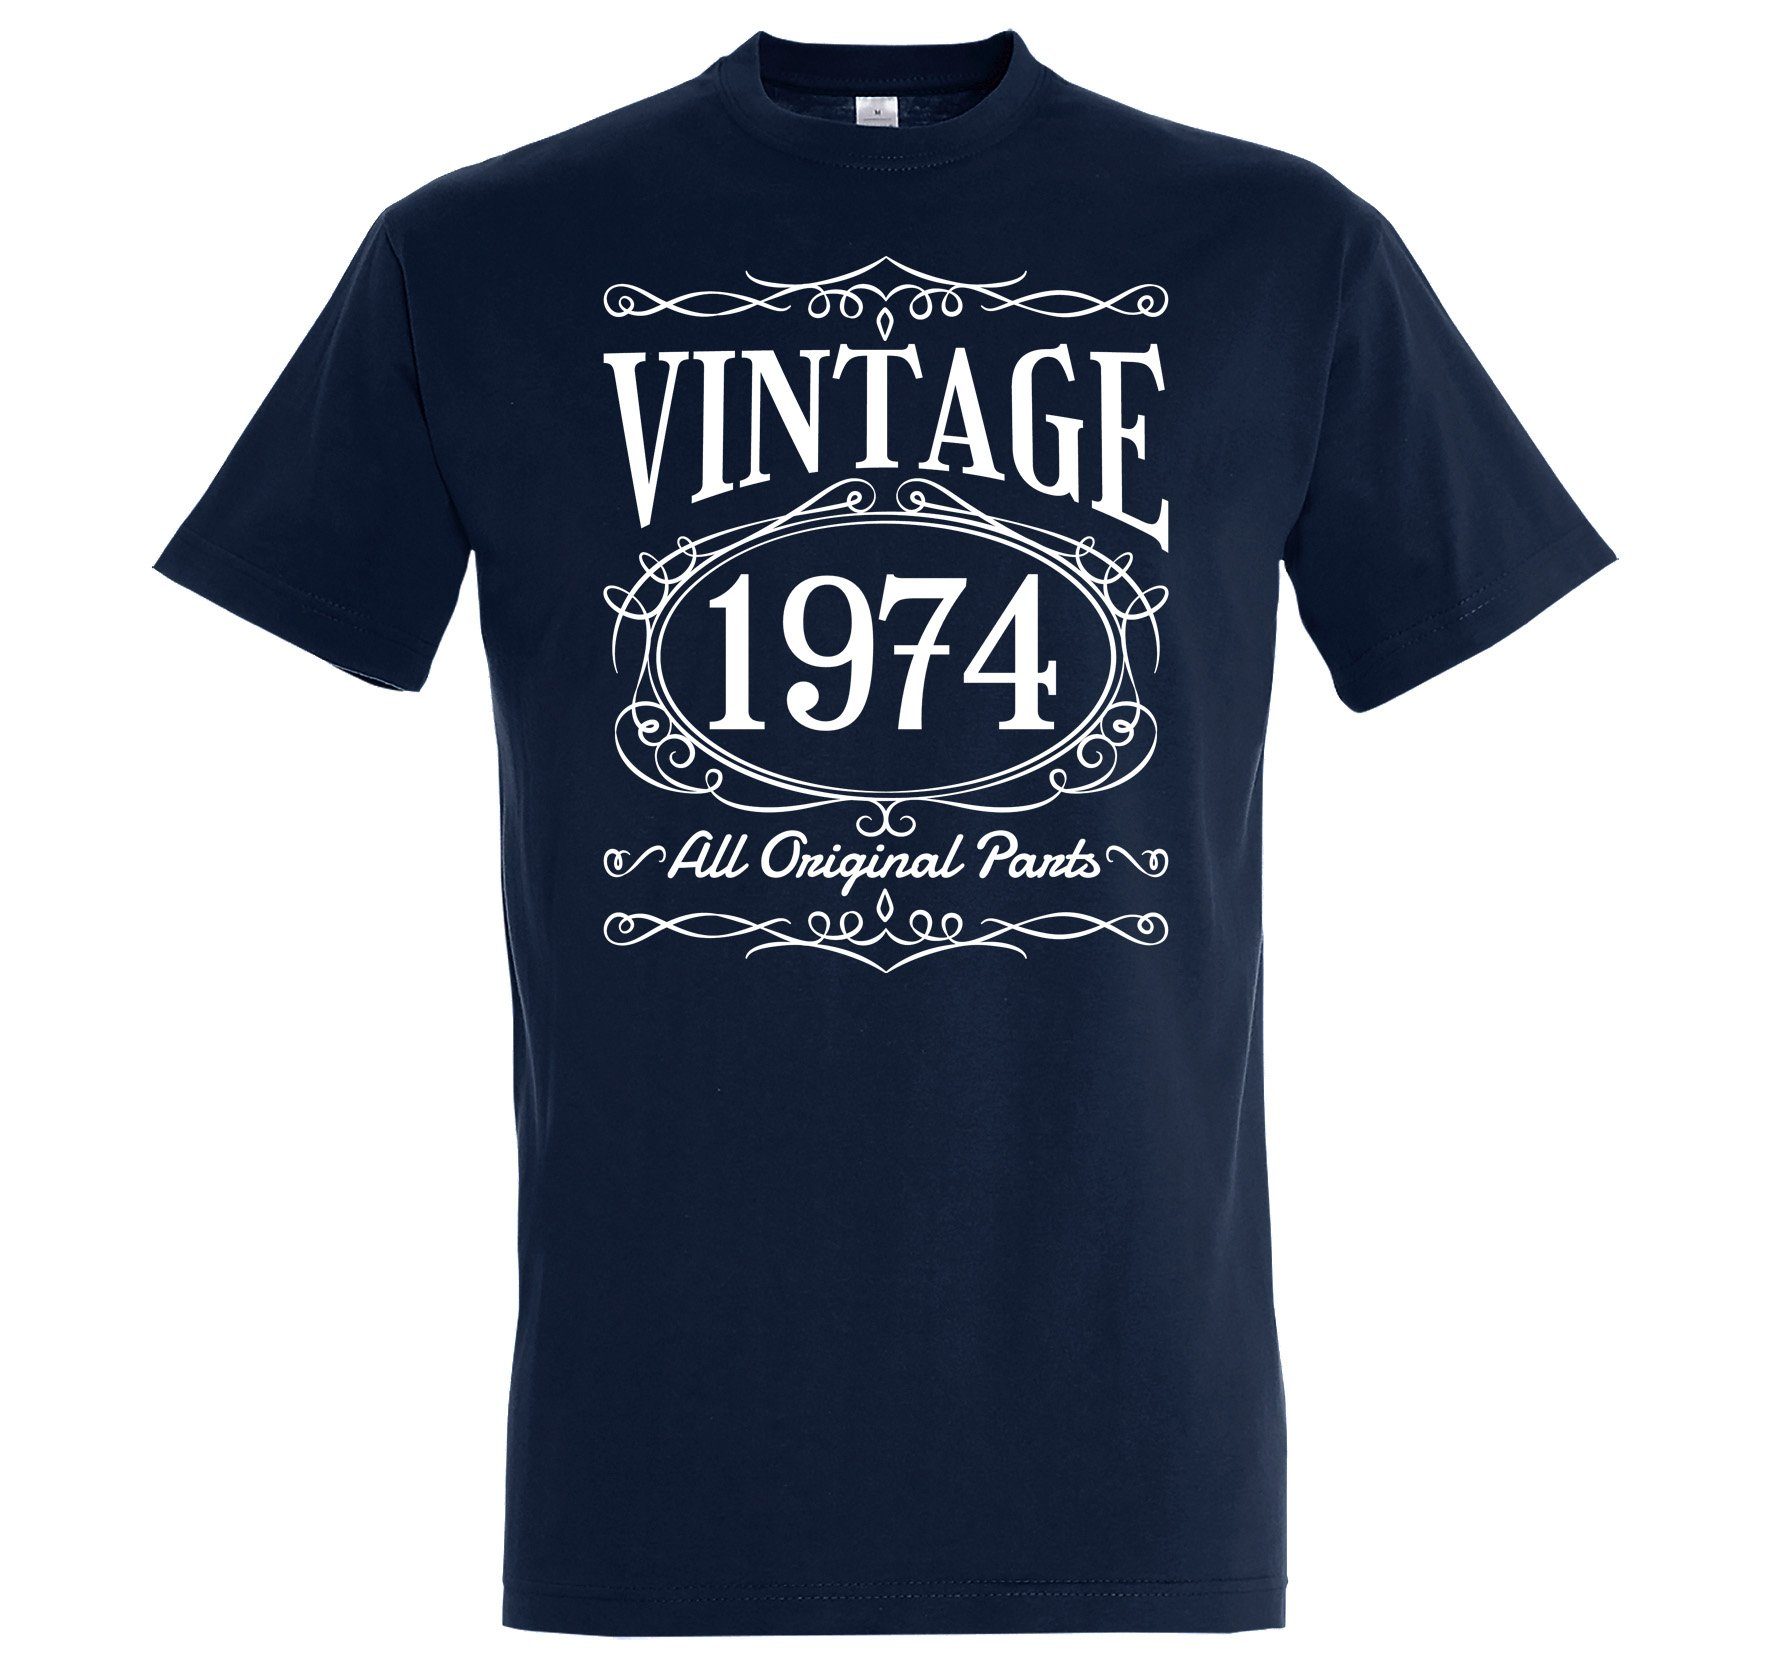 Youth Designz T-Shirt Vintage 1974 Herren Tshirt zum 50. Geburtstag mit lustigem Spruch zum Geburtstag